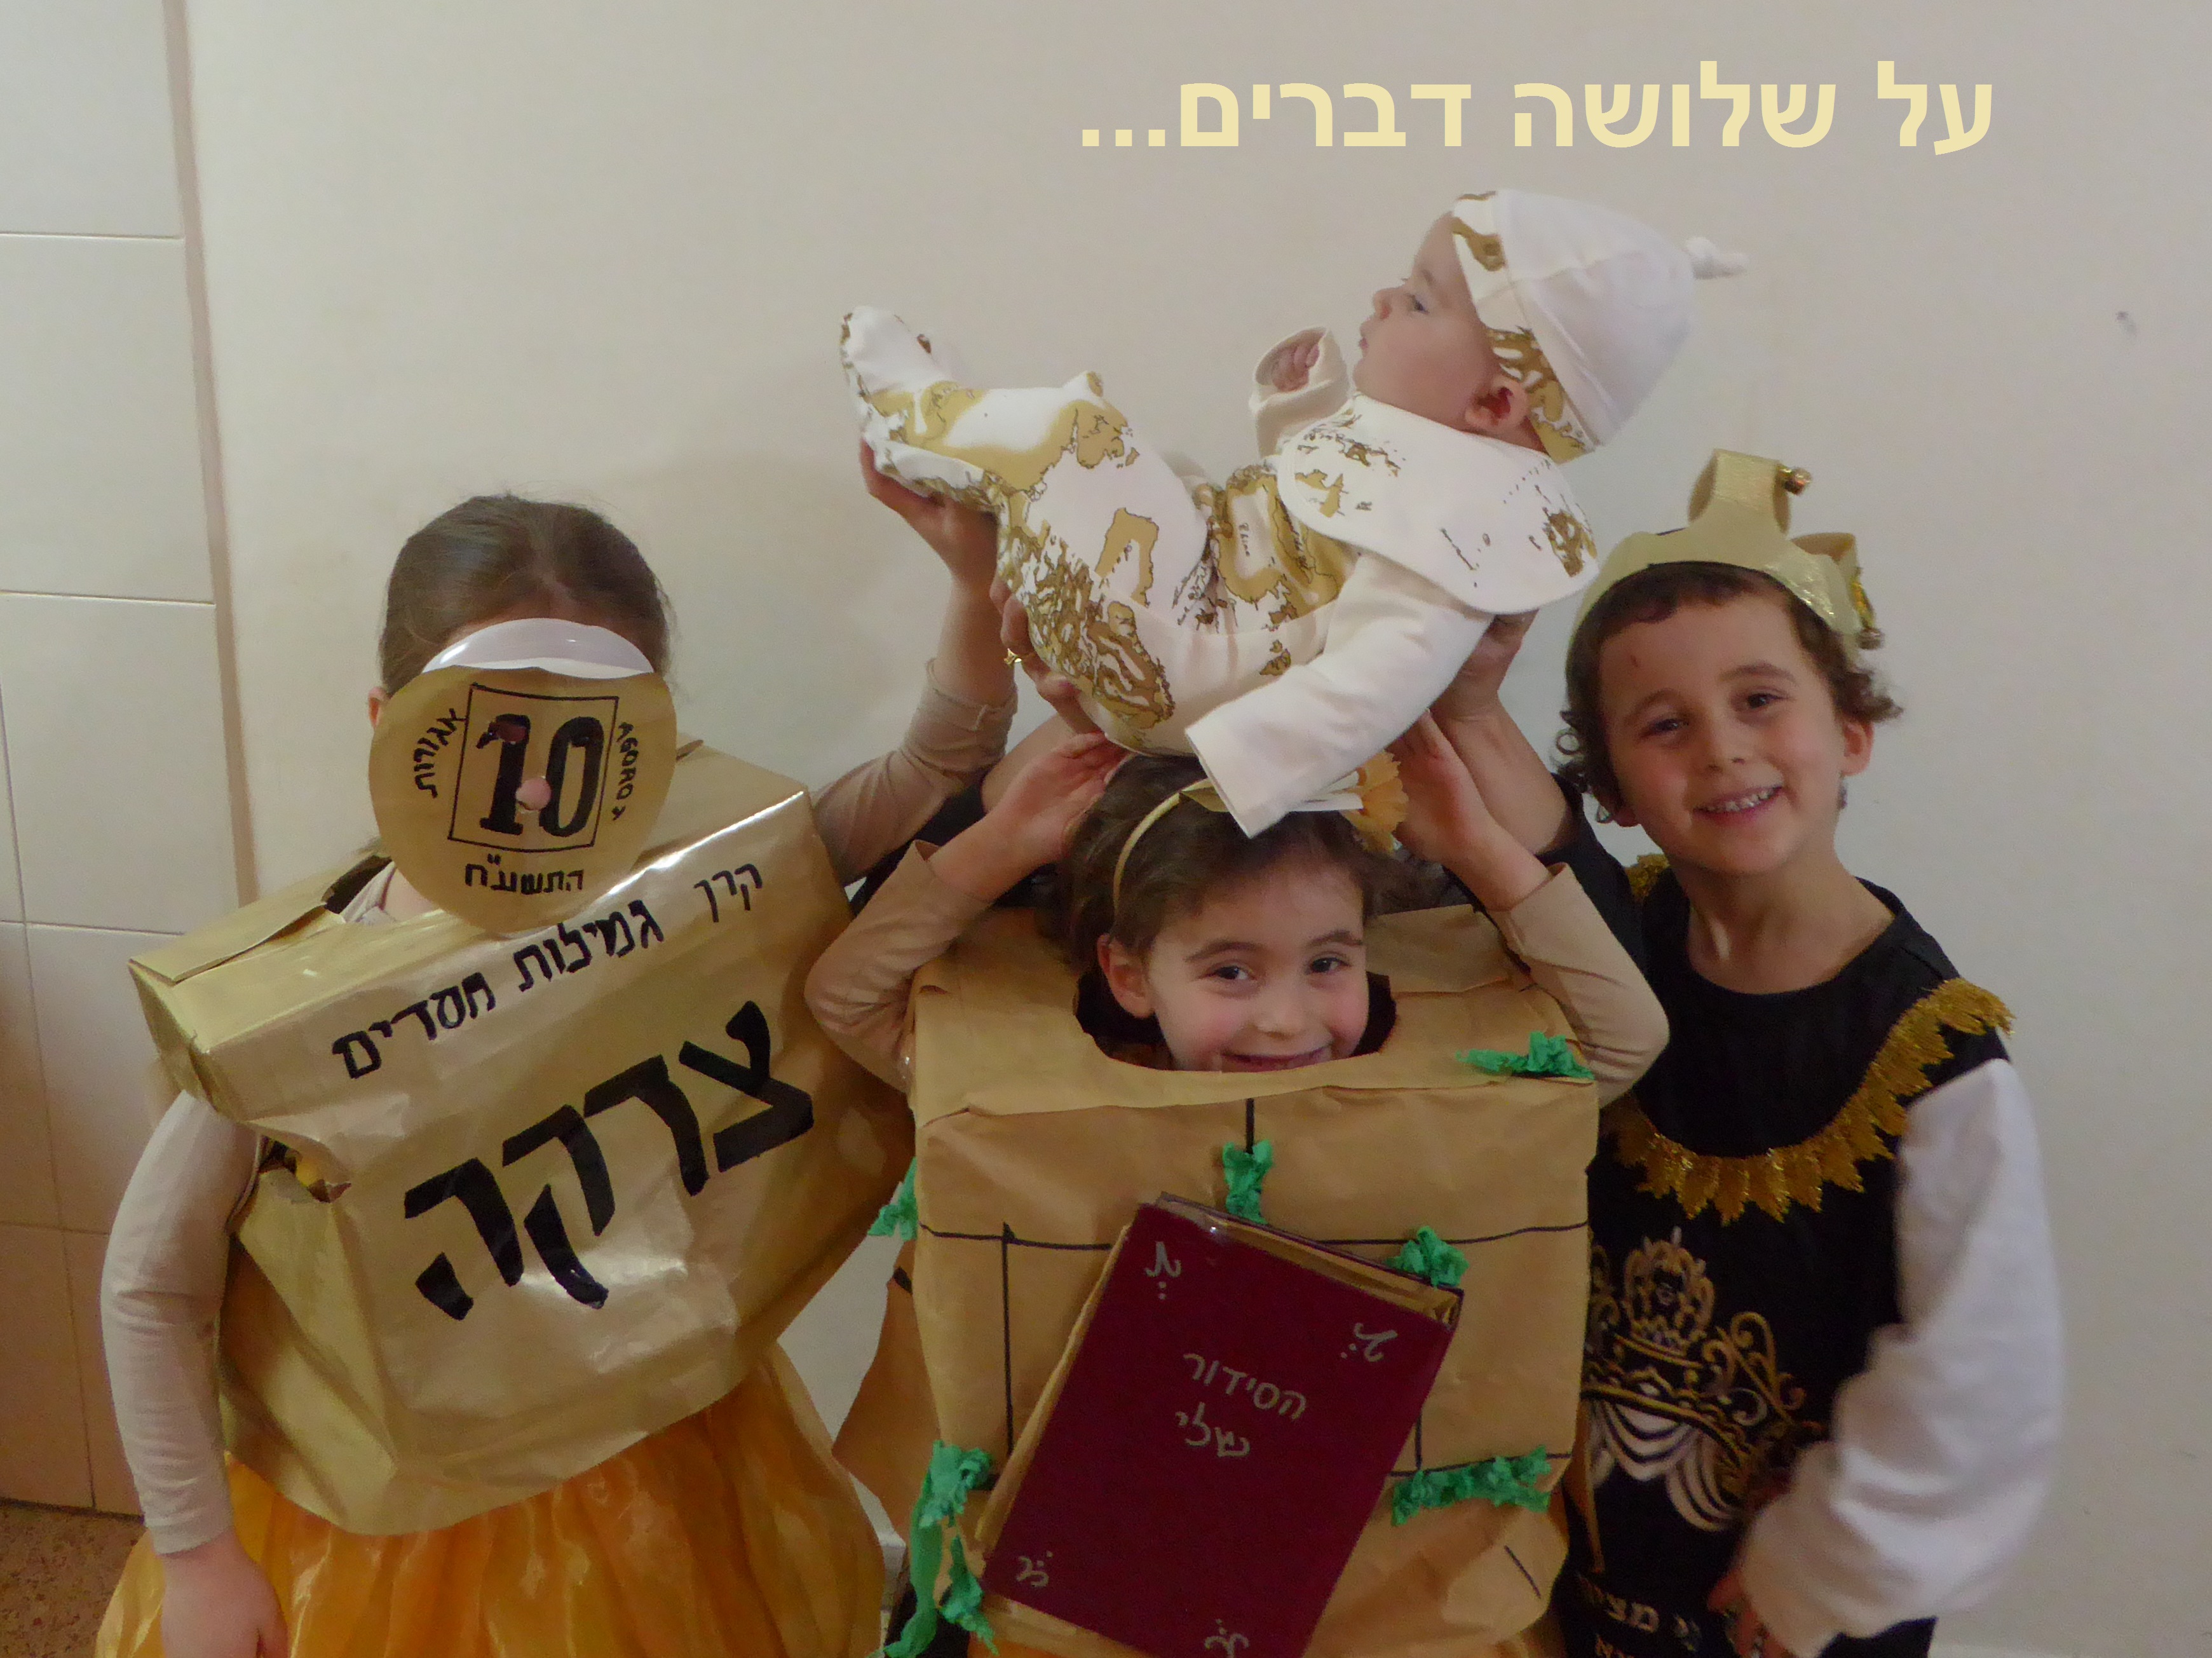 ילדי משפחה מירושלים, התחפשו לעל שלושה דברים העולם עומד על התורה ועל העבודה ועל גמילות חסדים